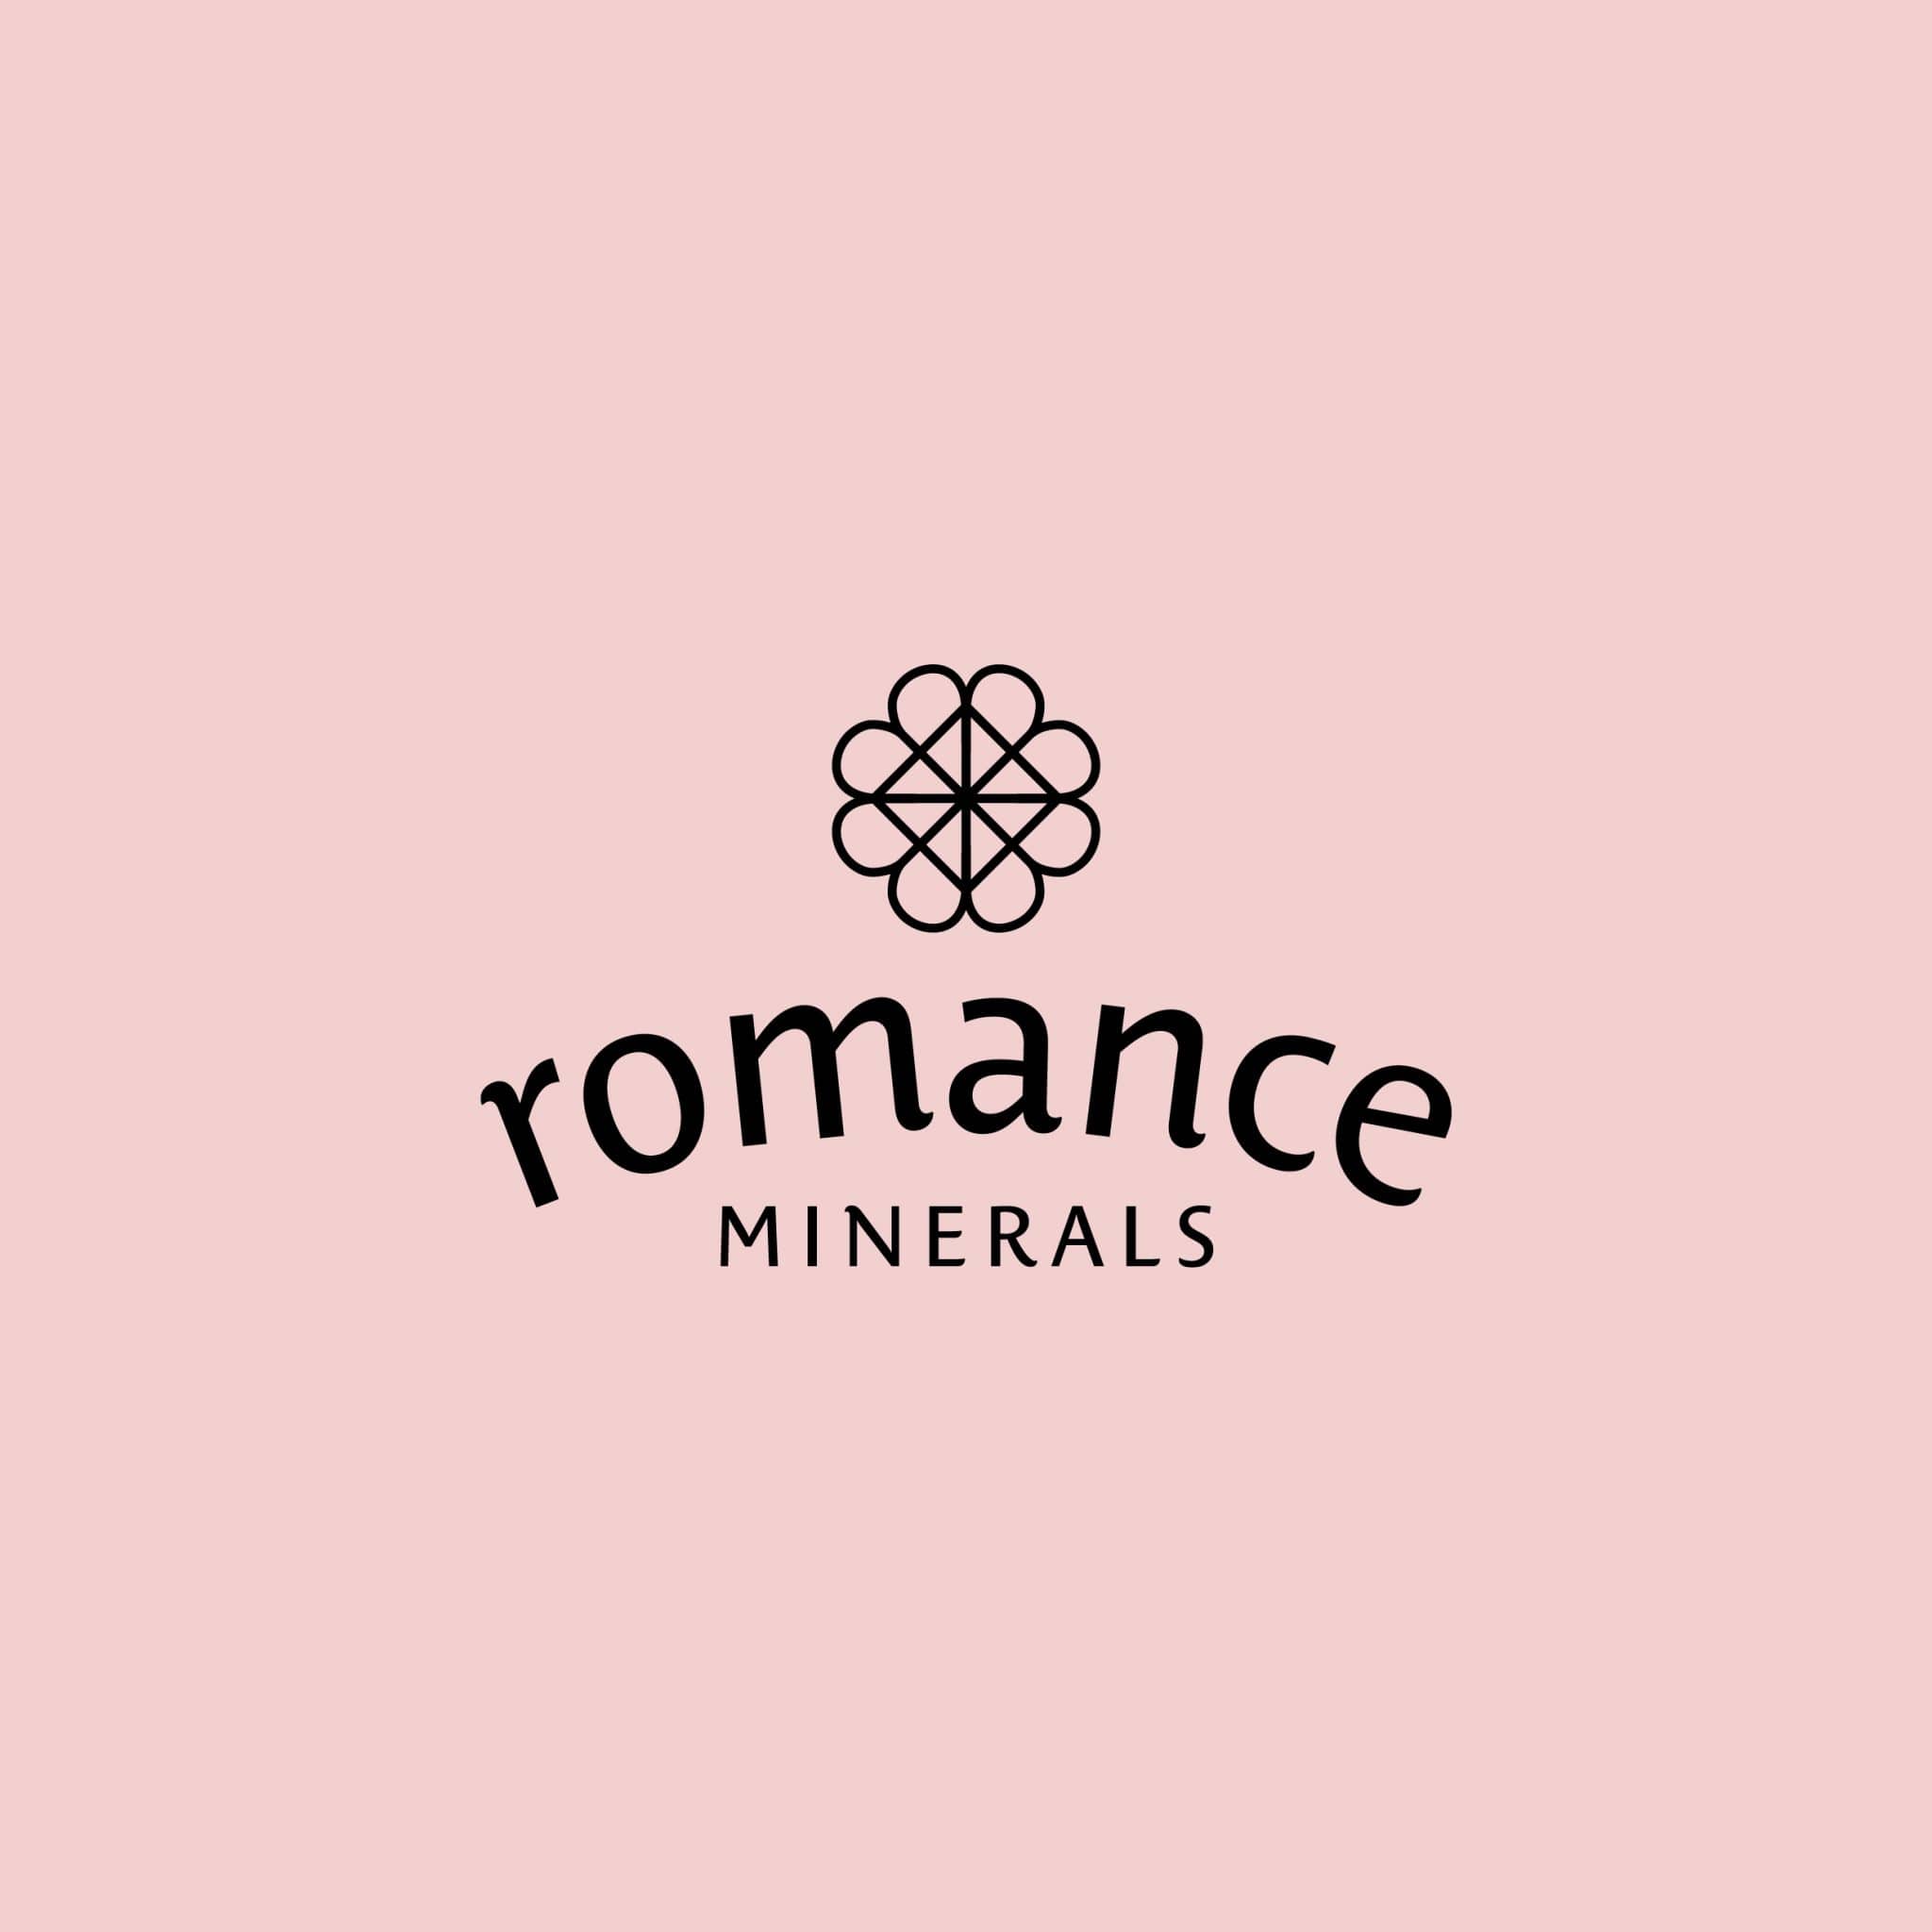 Romance Minerals